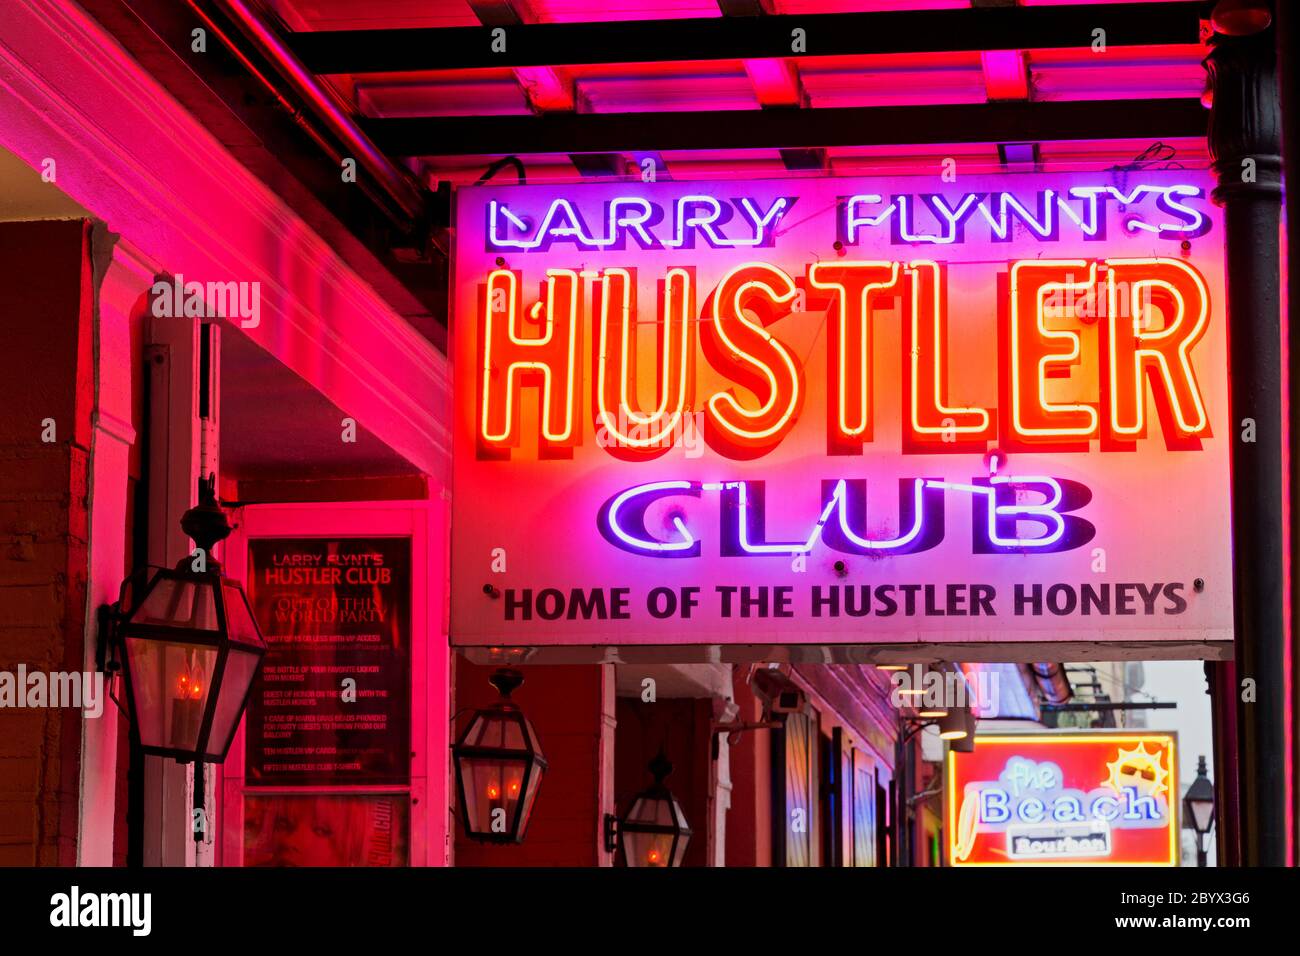 Hustler club nashville photos